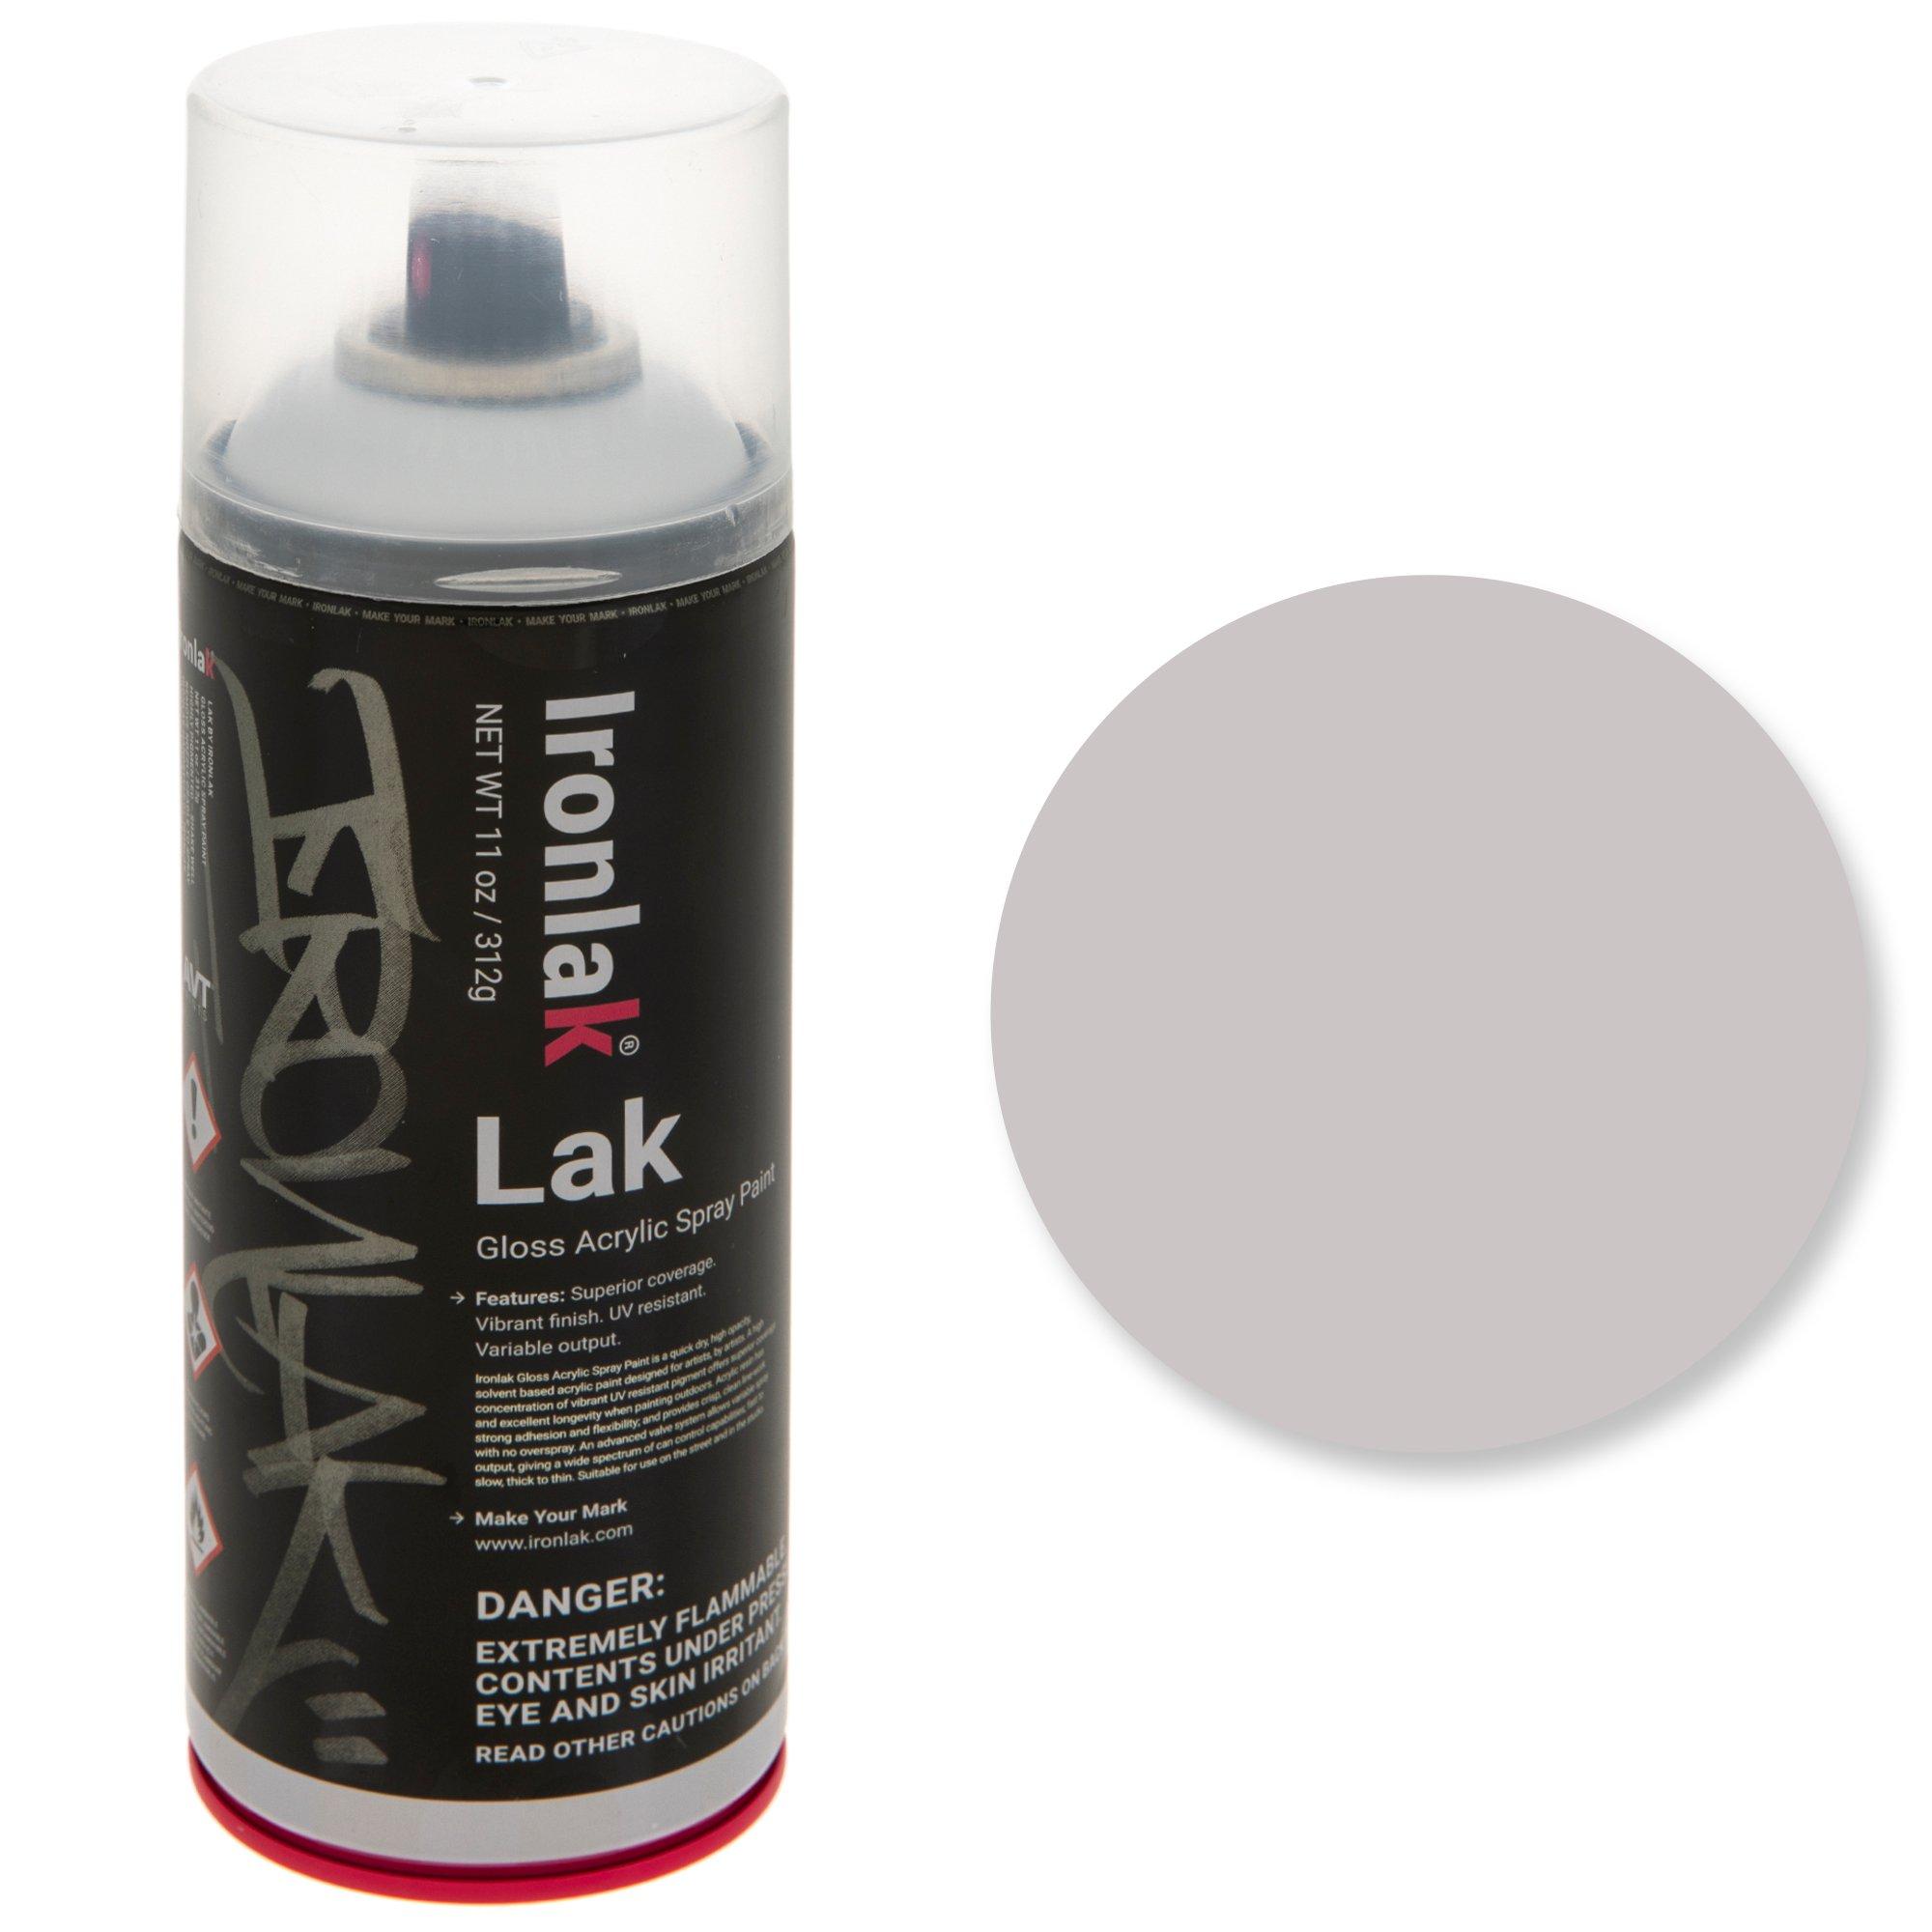 IronLak Gloss Acrylic Spray Paint, Hobby Lobby, 1774926